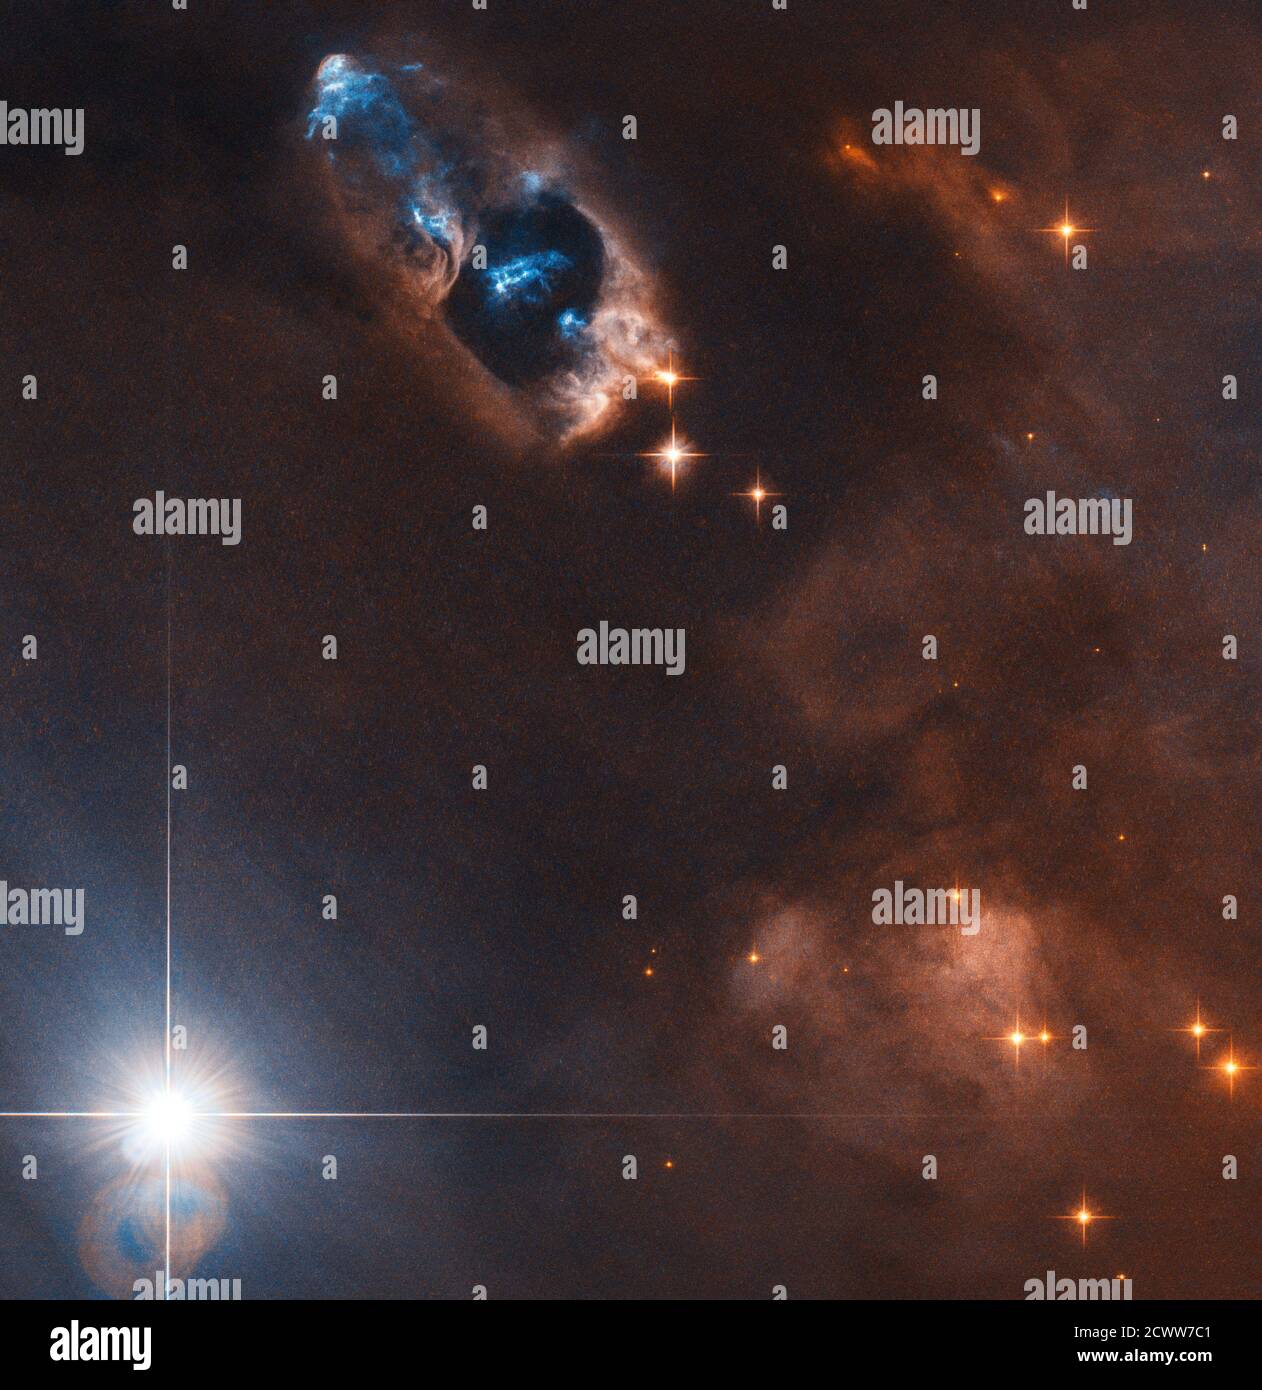 Hubble fängt Rauchkanone eines neugeborenen Sterns ein Sterne werden in dunklen Wolken aus Gas und Staub wie diesem geboren. Aber Sternentstehung ist ein energetischer Prozess, und neu gebildete Sterne können eine brillante Darstellung von Lichtern, Herbig-Haro-Objekte genannt, aussenden. Diese Objekte bilden sich, wenn vom neugeborenen Stern ausgespuckte Strahlen heißen Gases mit hoher Geschwindigkeit mit der umgebenden Materie kollidieren. In diesem Hubble-Weltraumteleskop-Bild können diese Objekte in der oberen Mitte als hellblaue Streifen gesehen werden, die sich von dem Stern, der sie mit 150,000 Meilen pro Stunde schuf, nach links oben wegbewegen. Stockfoto